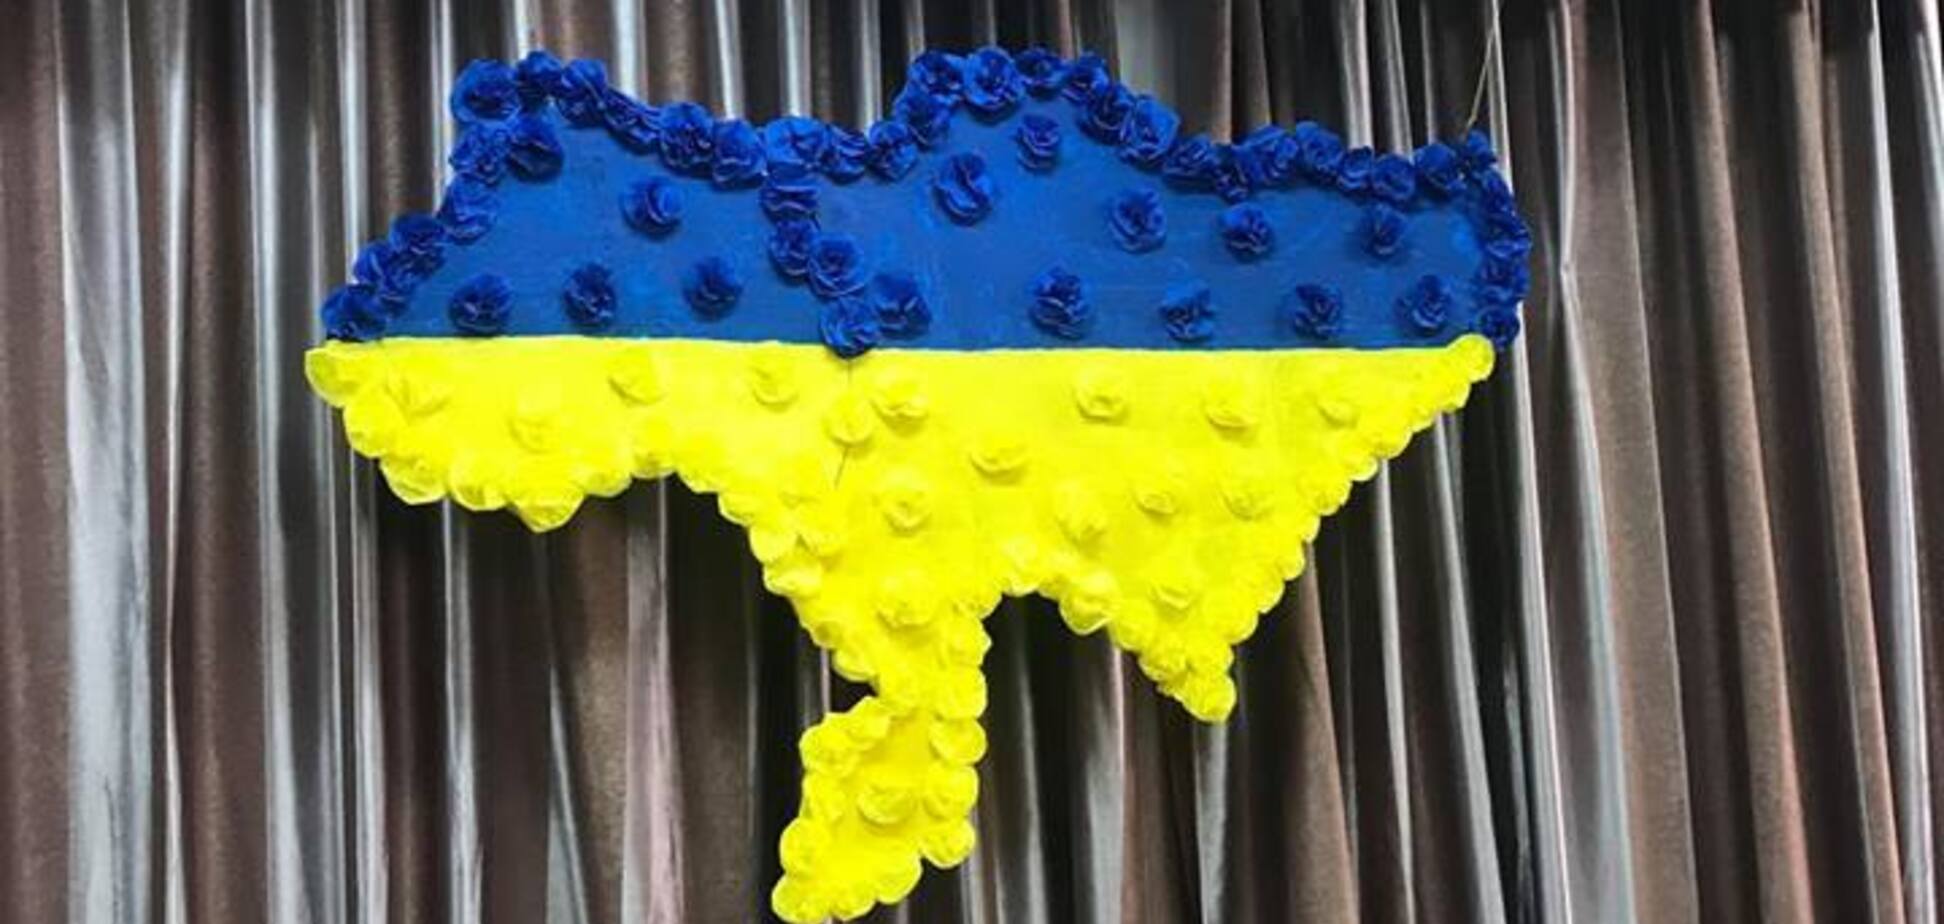 'Ганьба в столиці!' На виборчій дільниці в Києві повісили карту без Криму